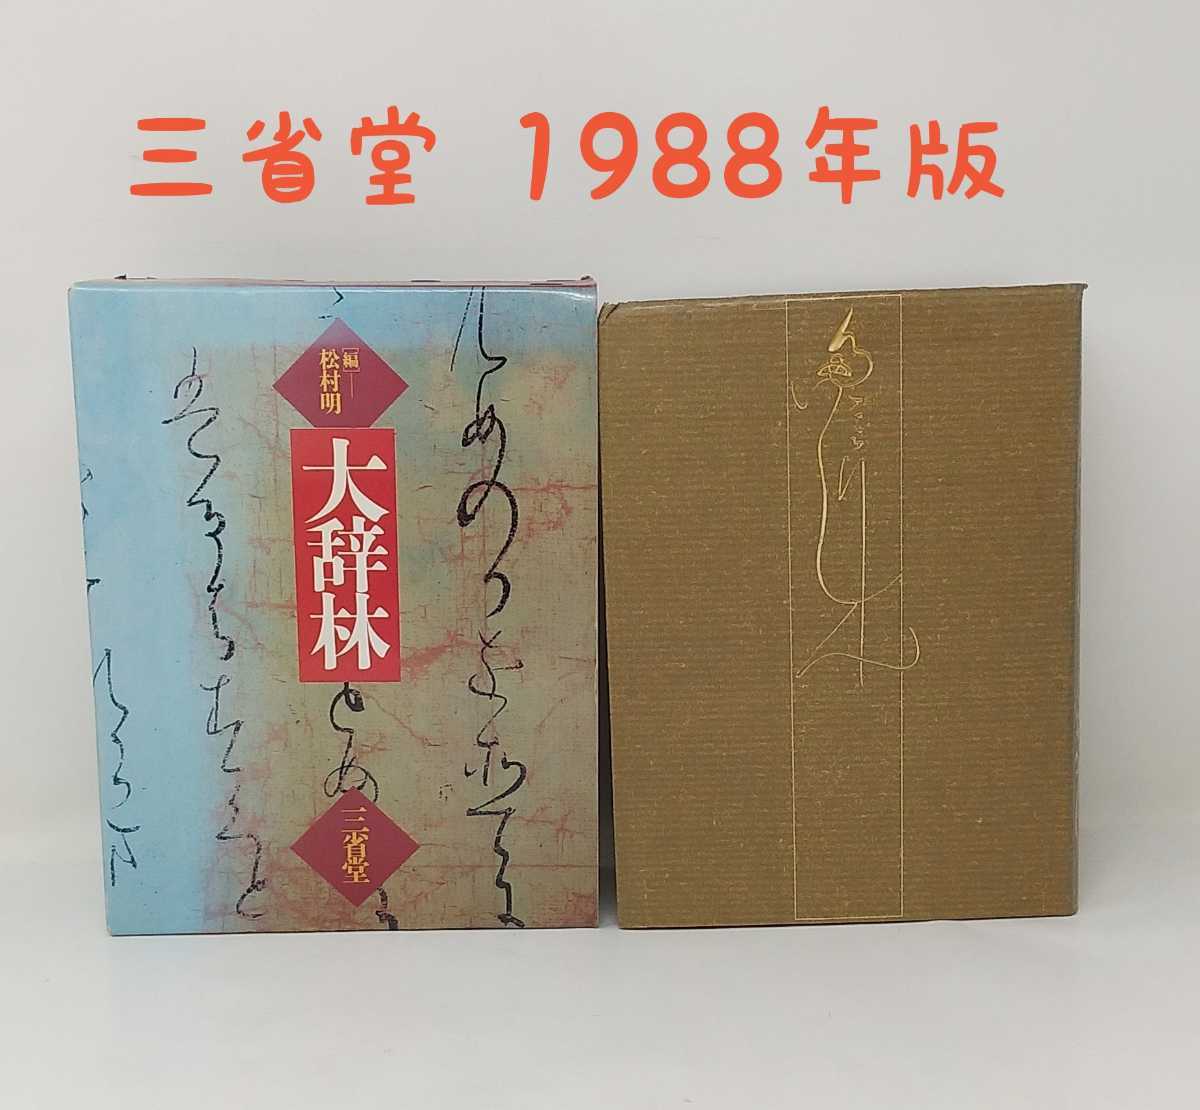 m1-537*[ большой .. сосна . Akira сборник ] три ..1988 год 11 месяц выпуск словарь государственного языка Showa Retro 